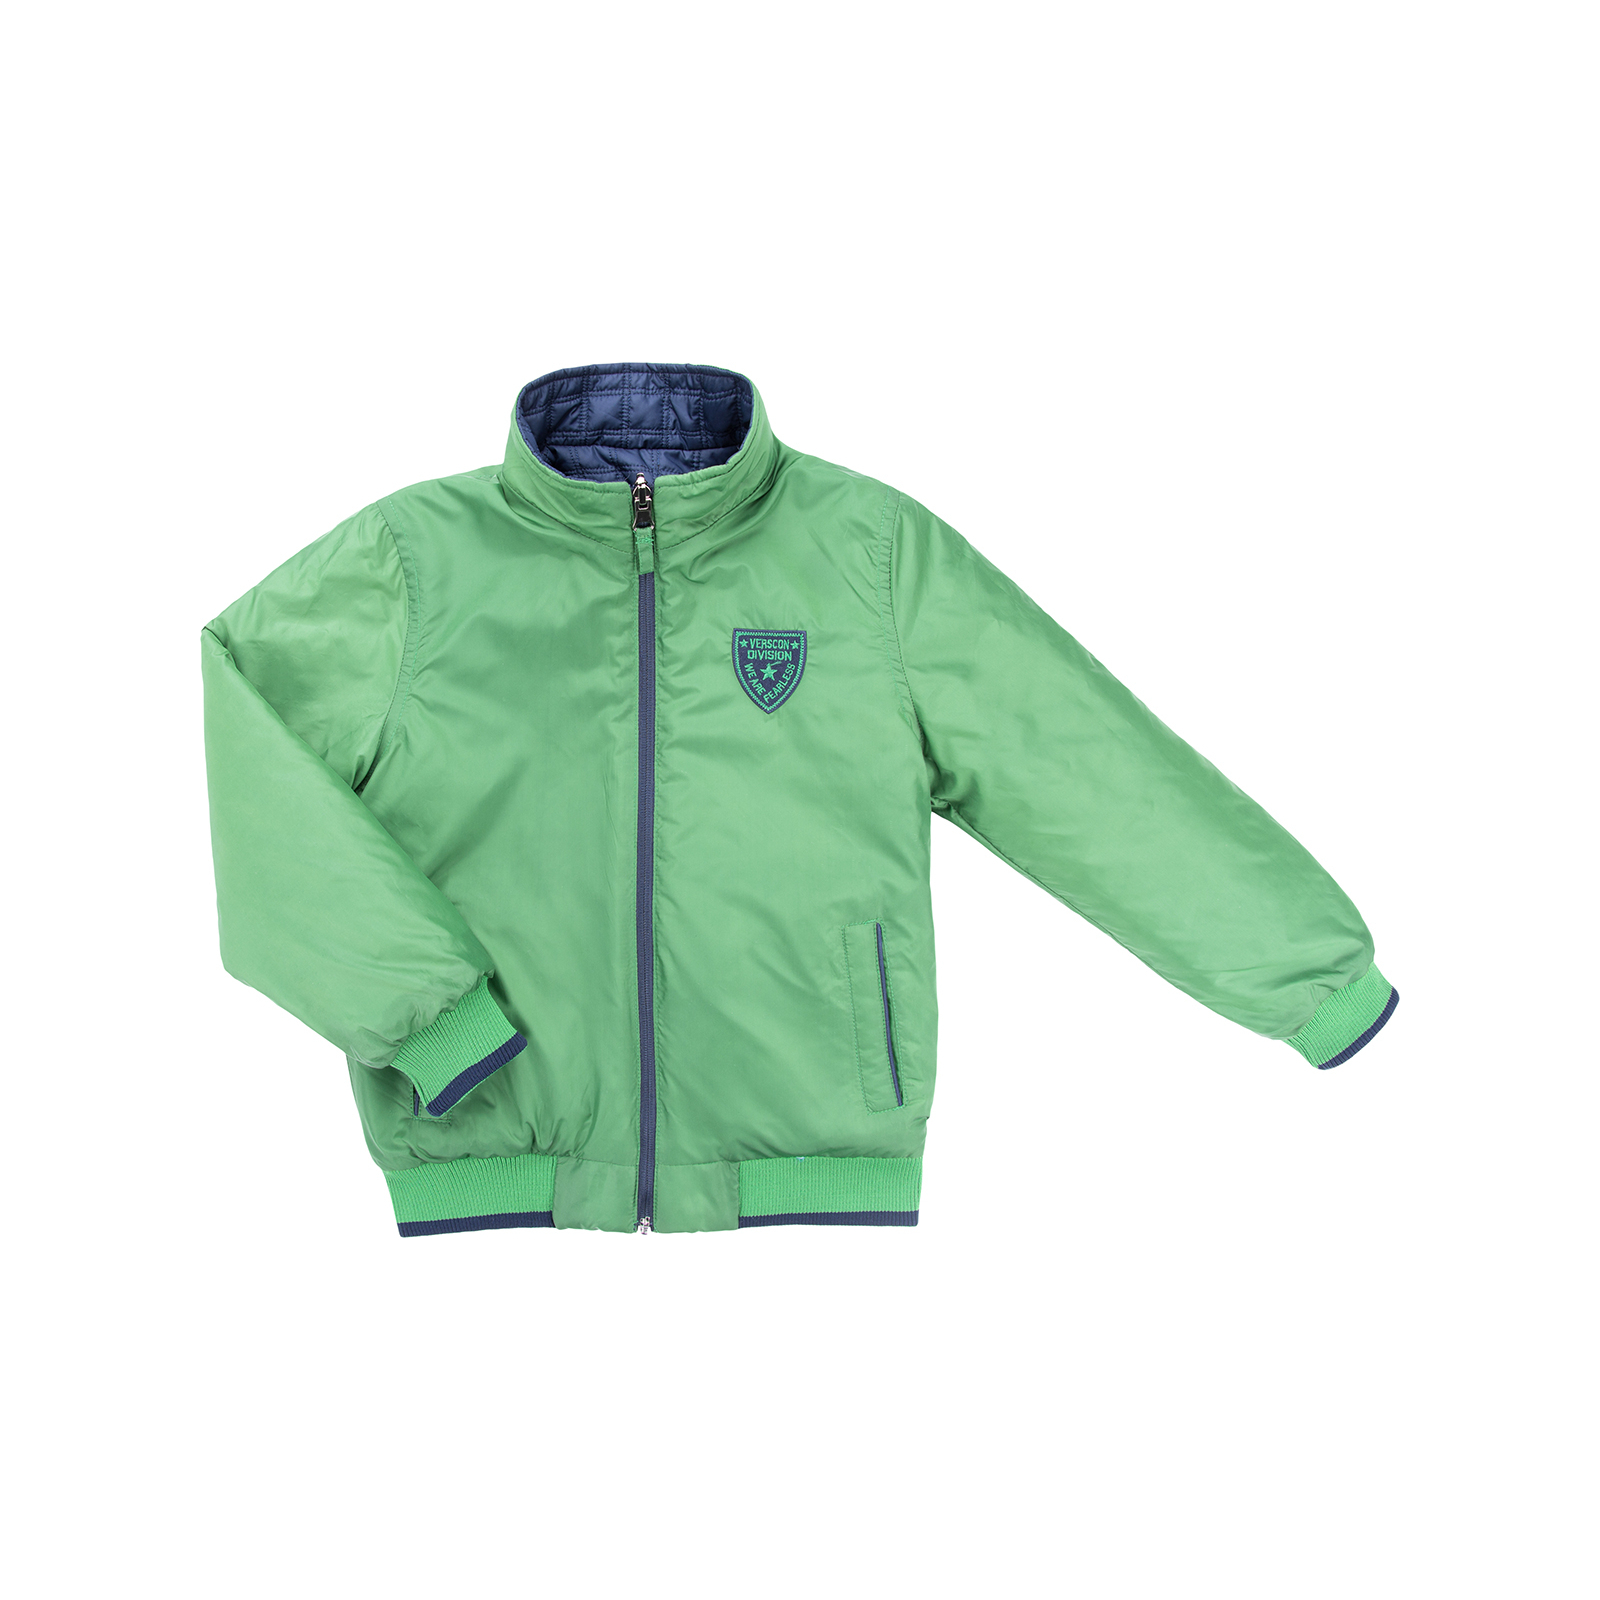 Куртка Verscon двухсторонняя синяя и зеленая (3278-128B-blue-green) изображение 6